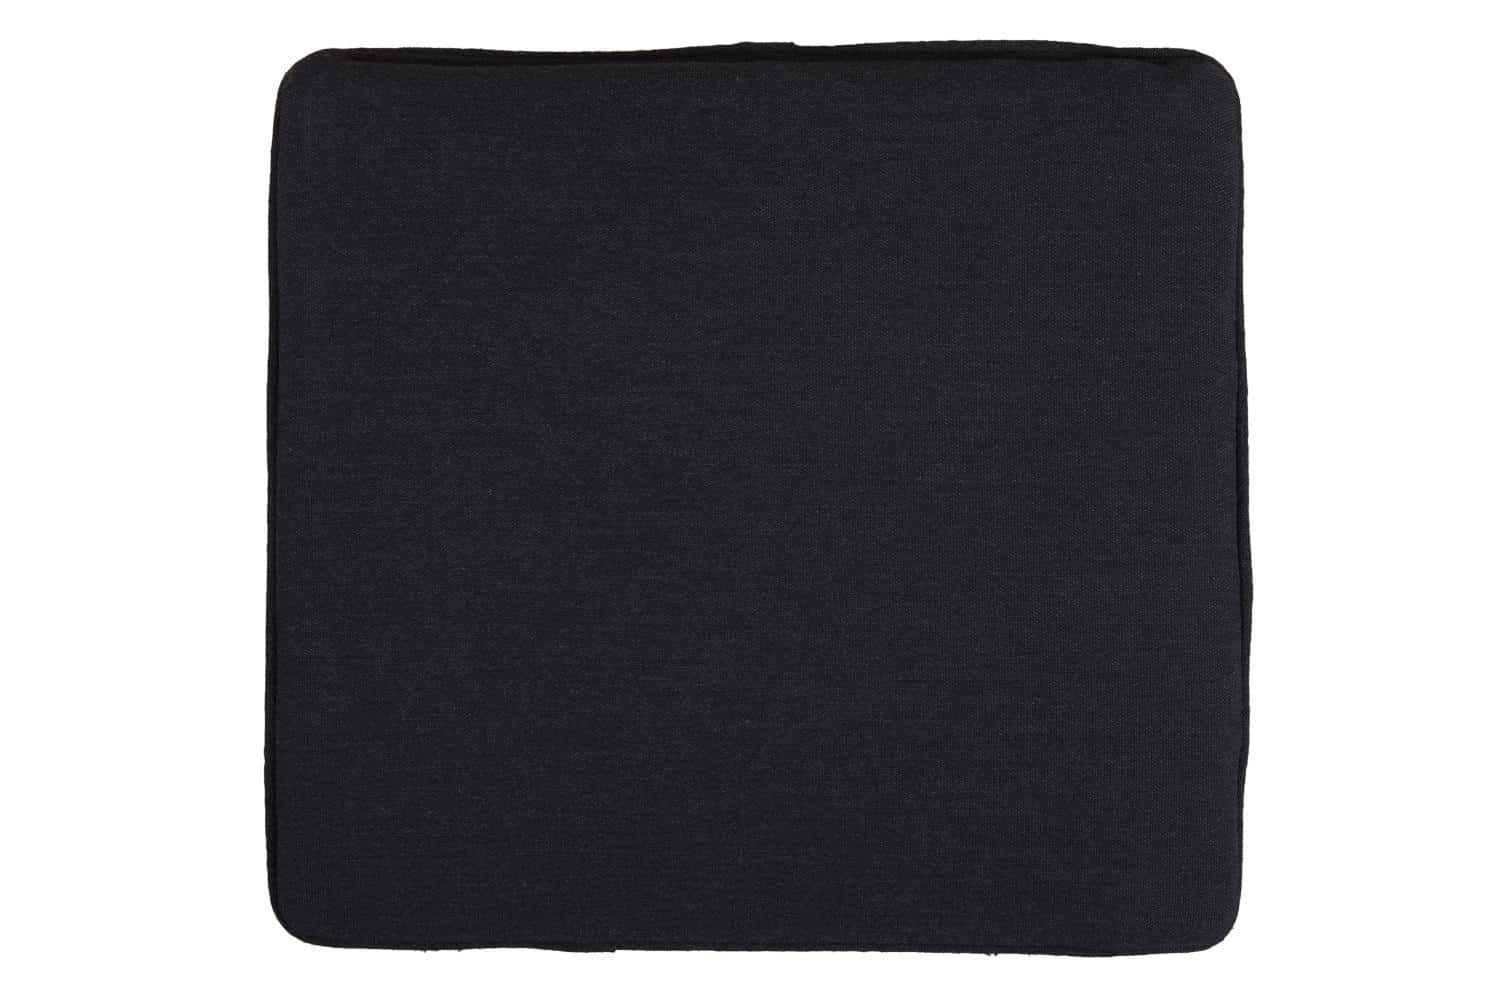 Brafab Frisk Sittdyna svart är en mjuk, bekväm och hållbar dyna i akryltyg med en korpsvart färg.